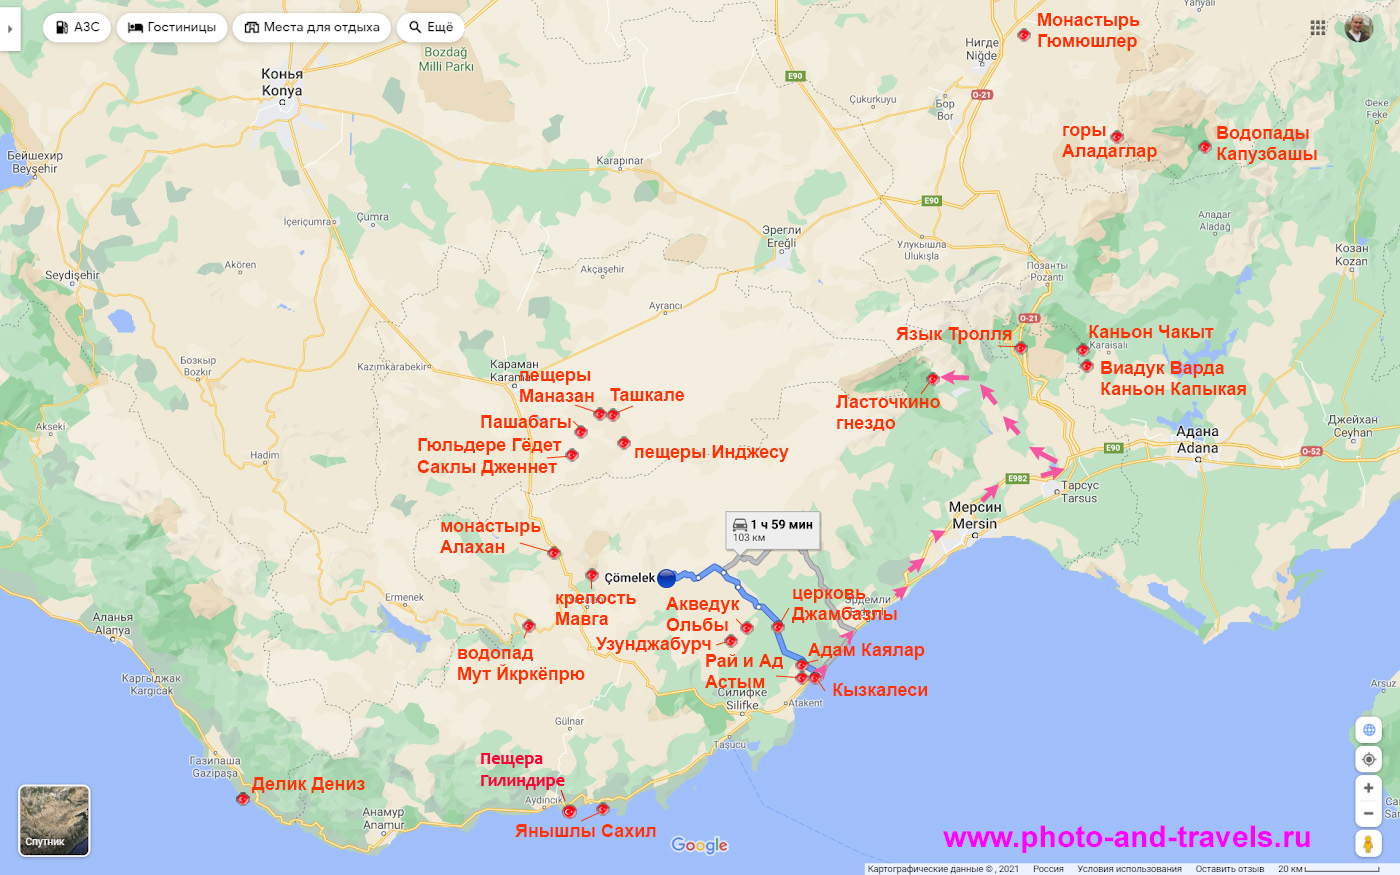 4. Карта с пояснением, как попасть в Чамлыяйла из Кызкалеси или из Мерсина - маршрут показан розовыми стрелками. Синяя линия - дорога в каньон Сасон.